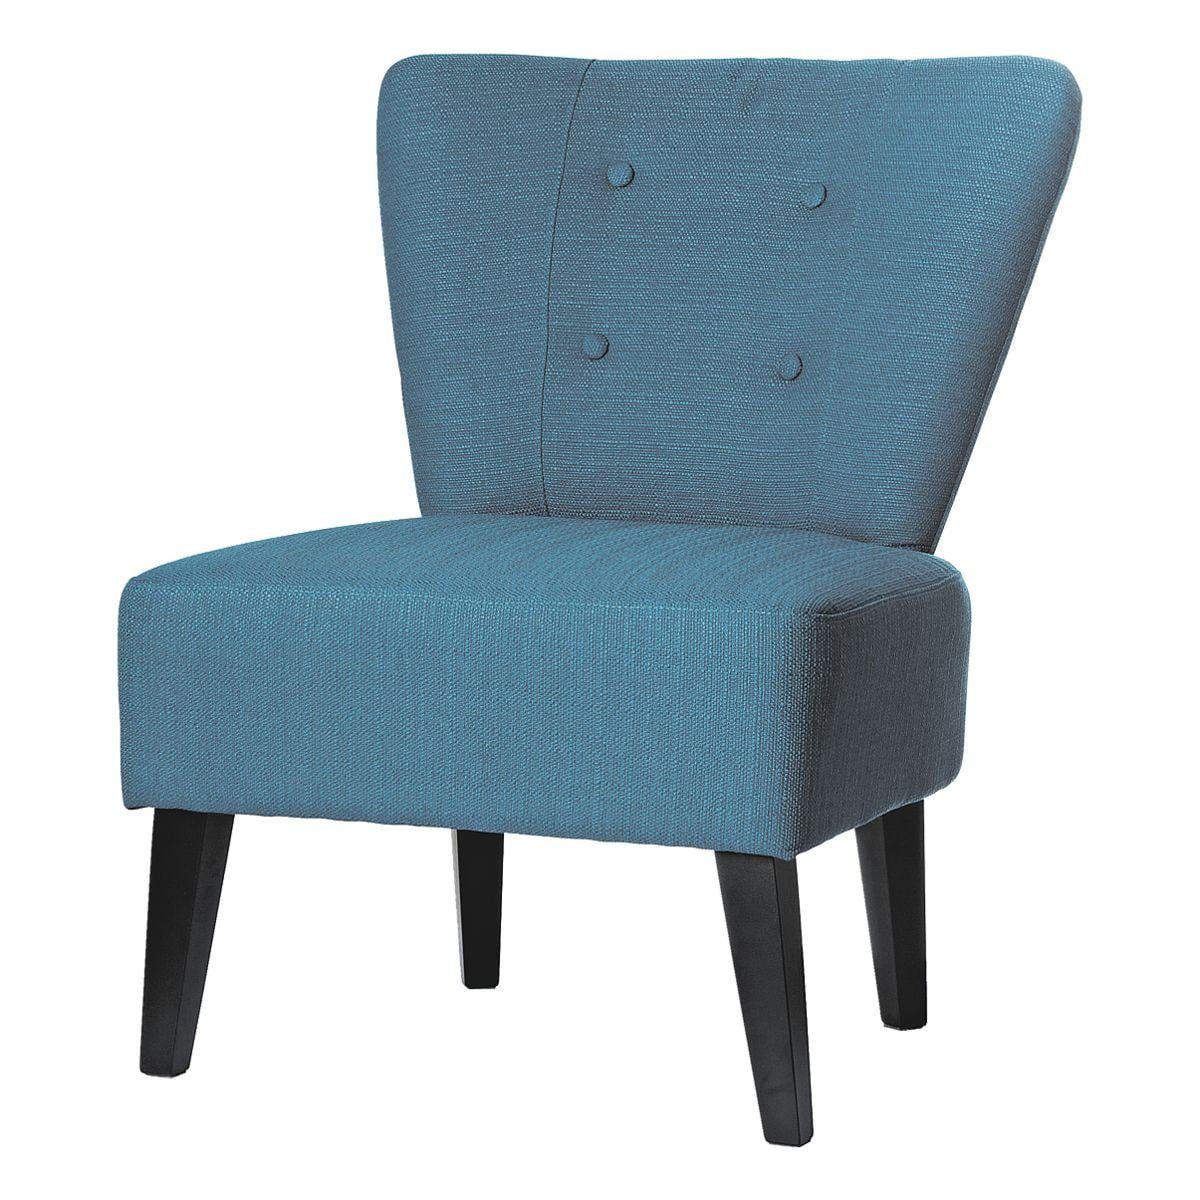 PAPERFLOW Sessel Brighton, im Vintage-Look, extrabreite Sitzfläche, Holzfüße blau